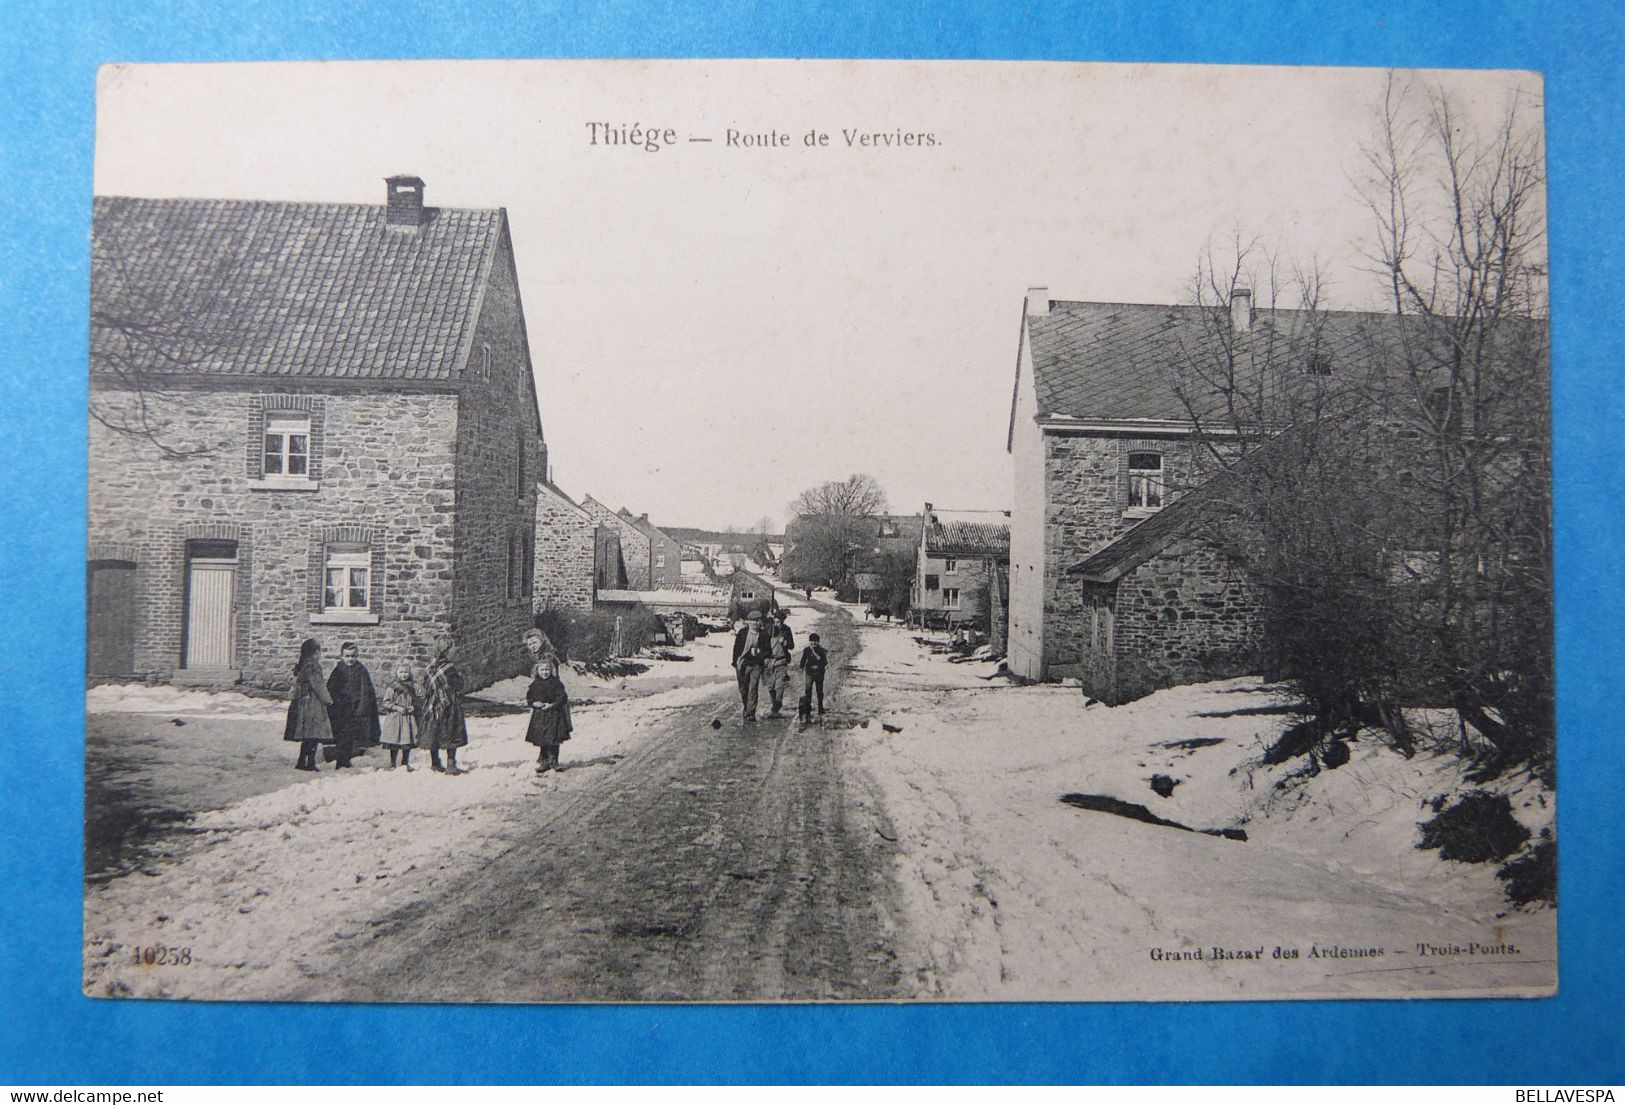 Thiege Route De Verviers. Hiver //n° 10258 Edit Grand Bazar Des Ardennes. Trois-Ponts -Jalhay. - Jalhay